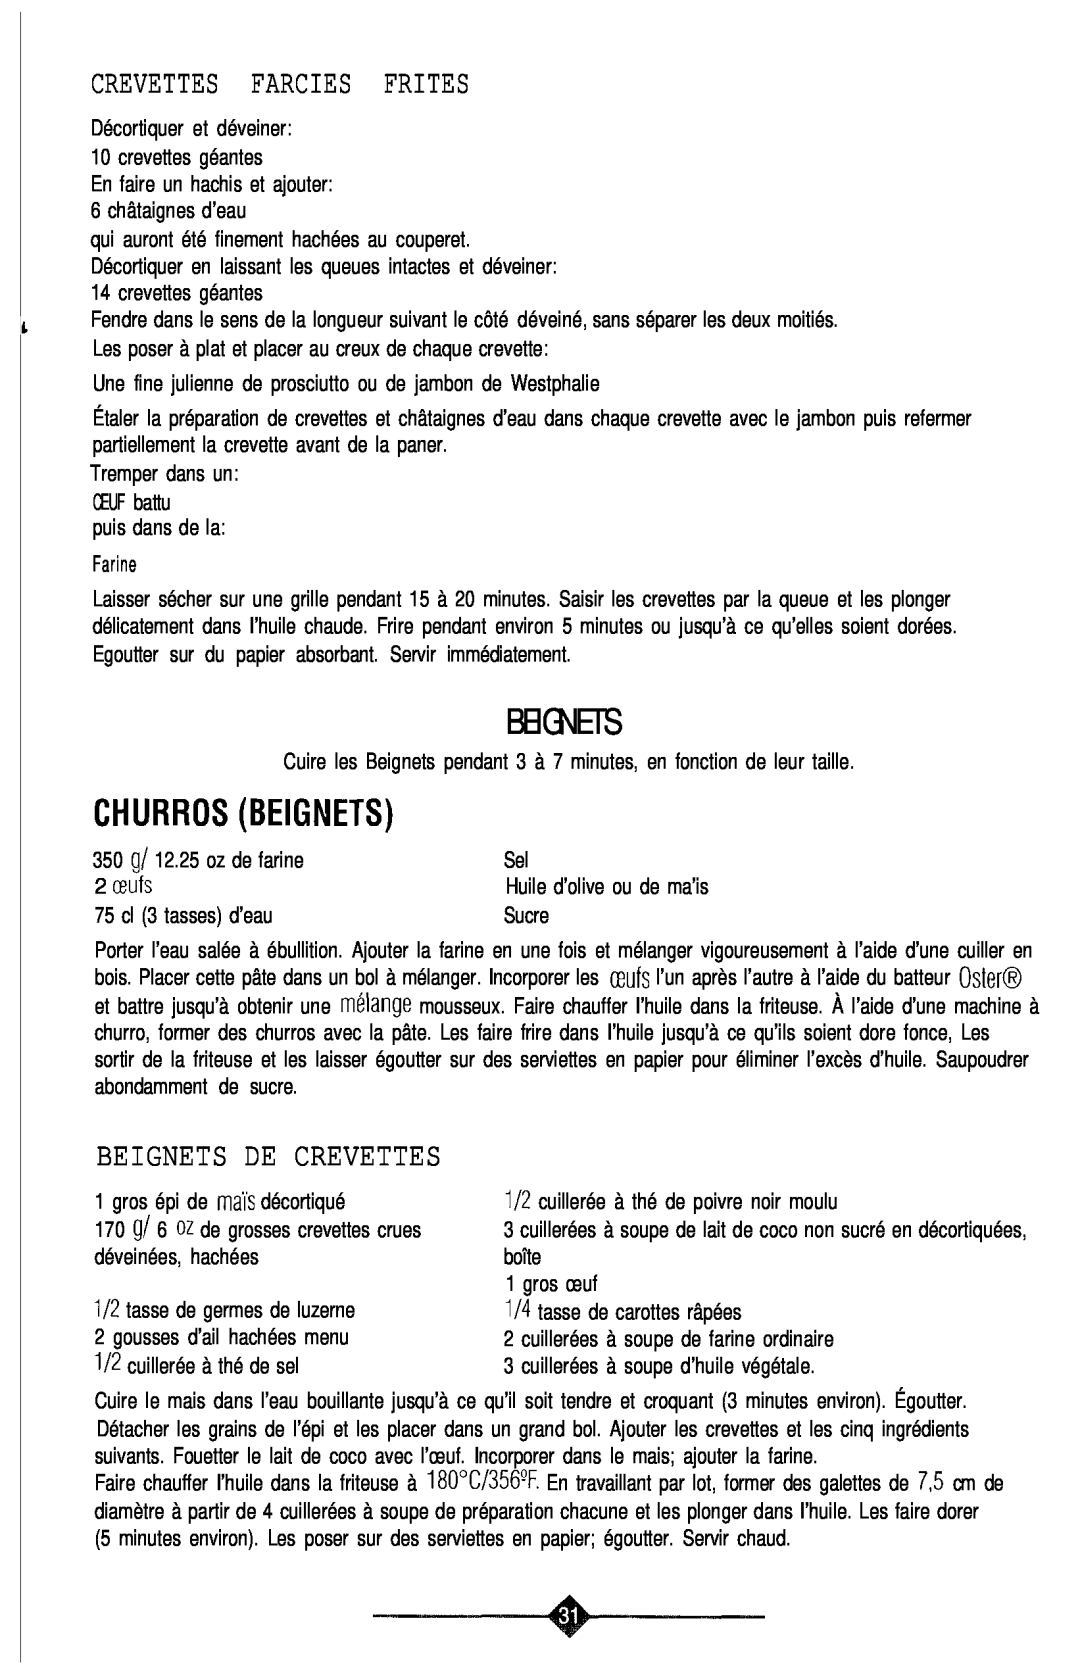 Sunbeam 3240, 3241 manual Crevettes Farcies Frites, Churrosbeignets, Beignets De Crevettes 